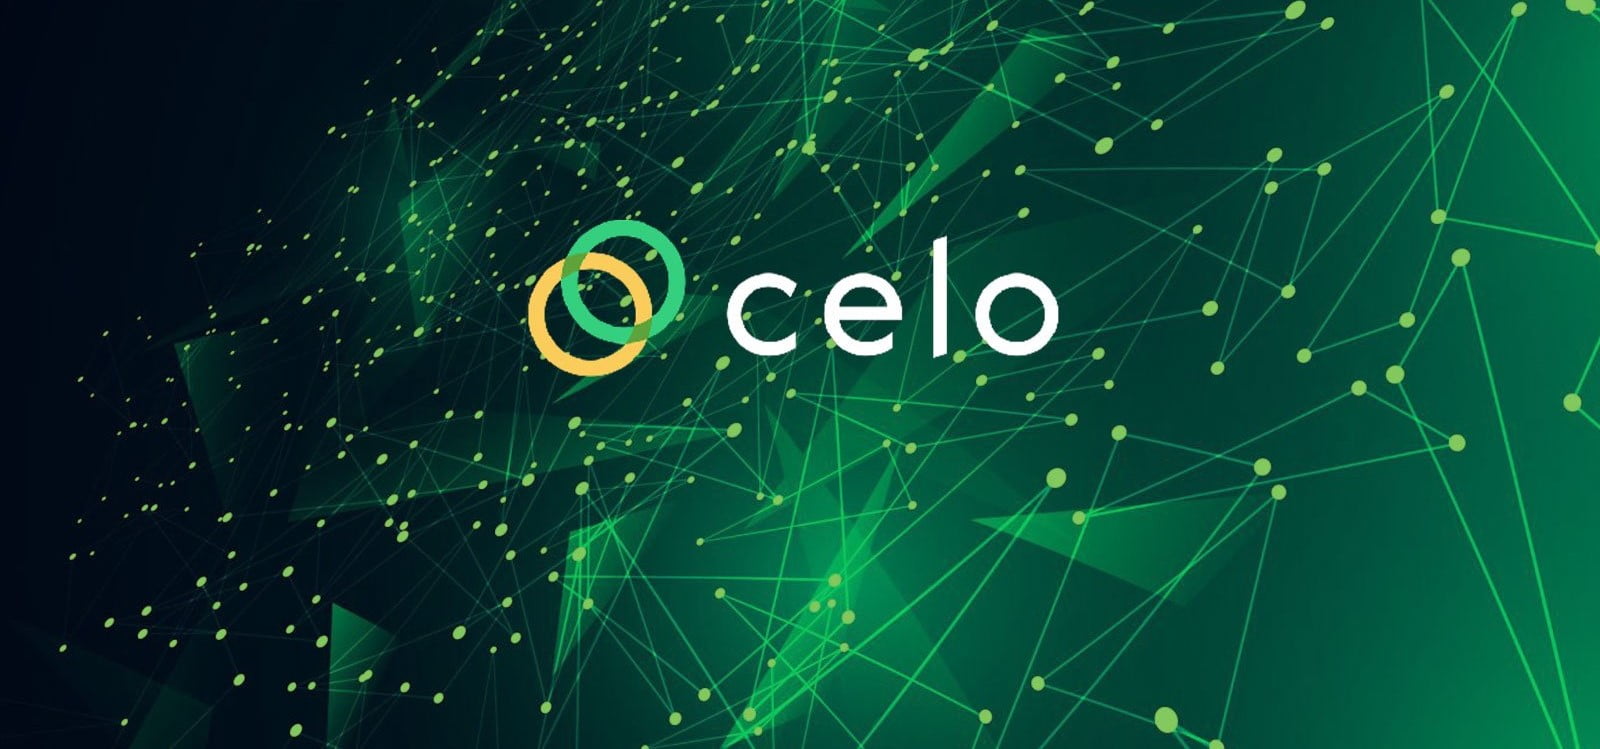 Celo - một nền tảng tài chính phi tập trung di động (DeFi) và cơ sở hạ tầng thanh toán toàn cầu.